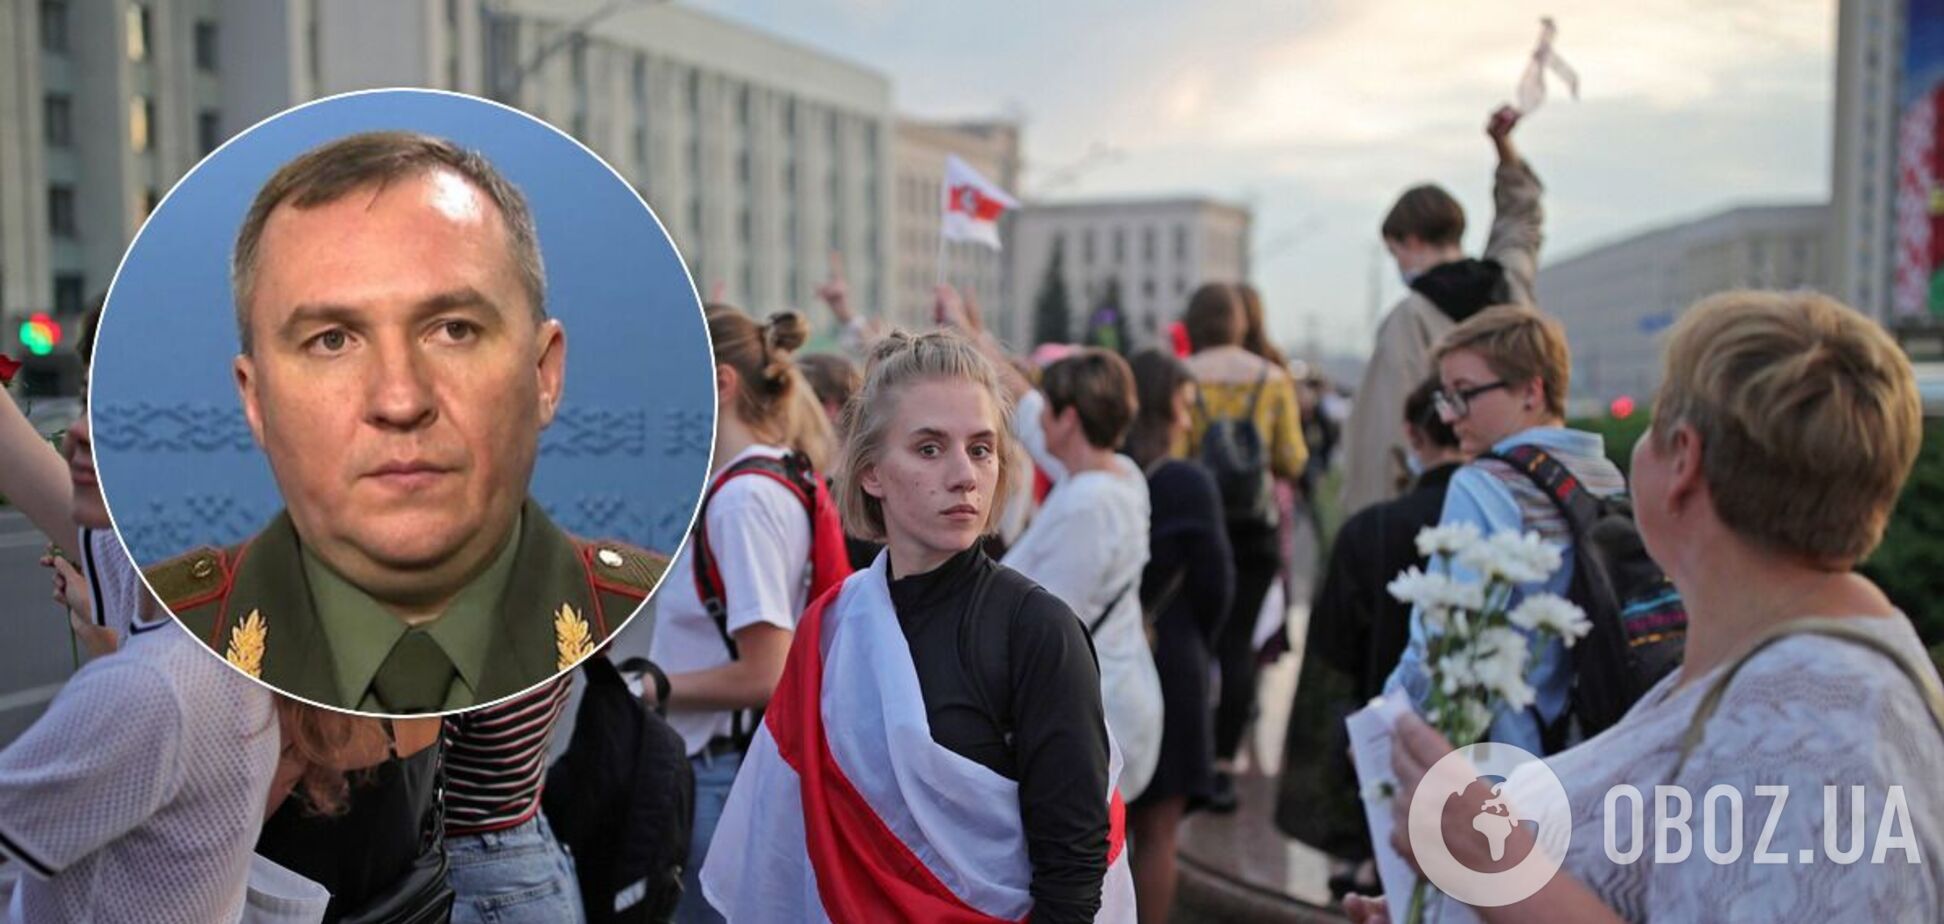 Глава Минобороны Беларуси обвинил Украину в попытке захвата власти